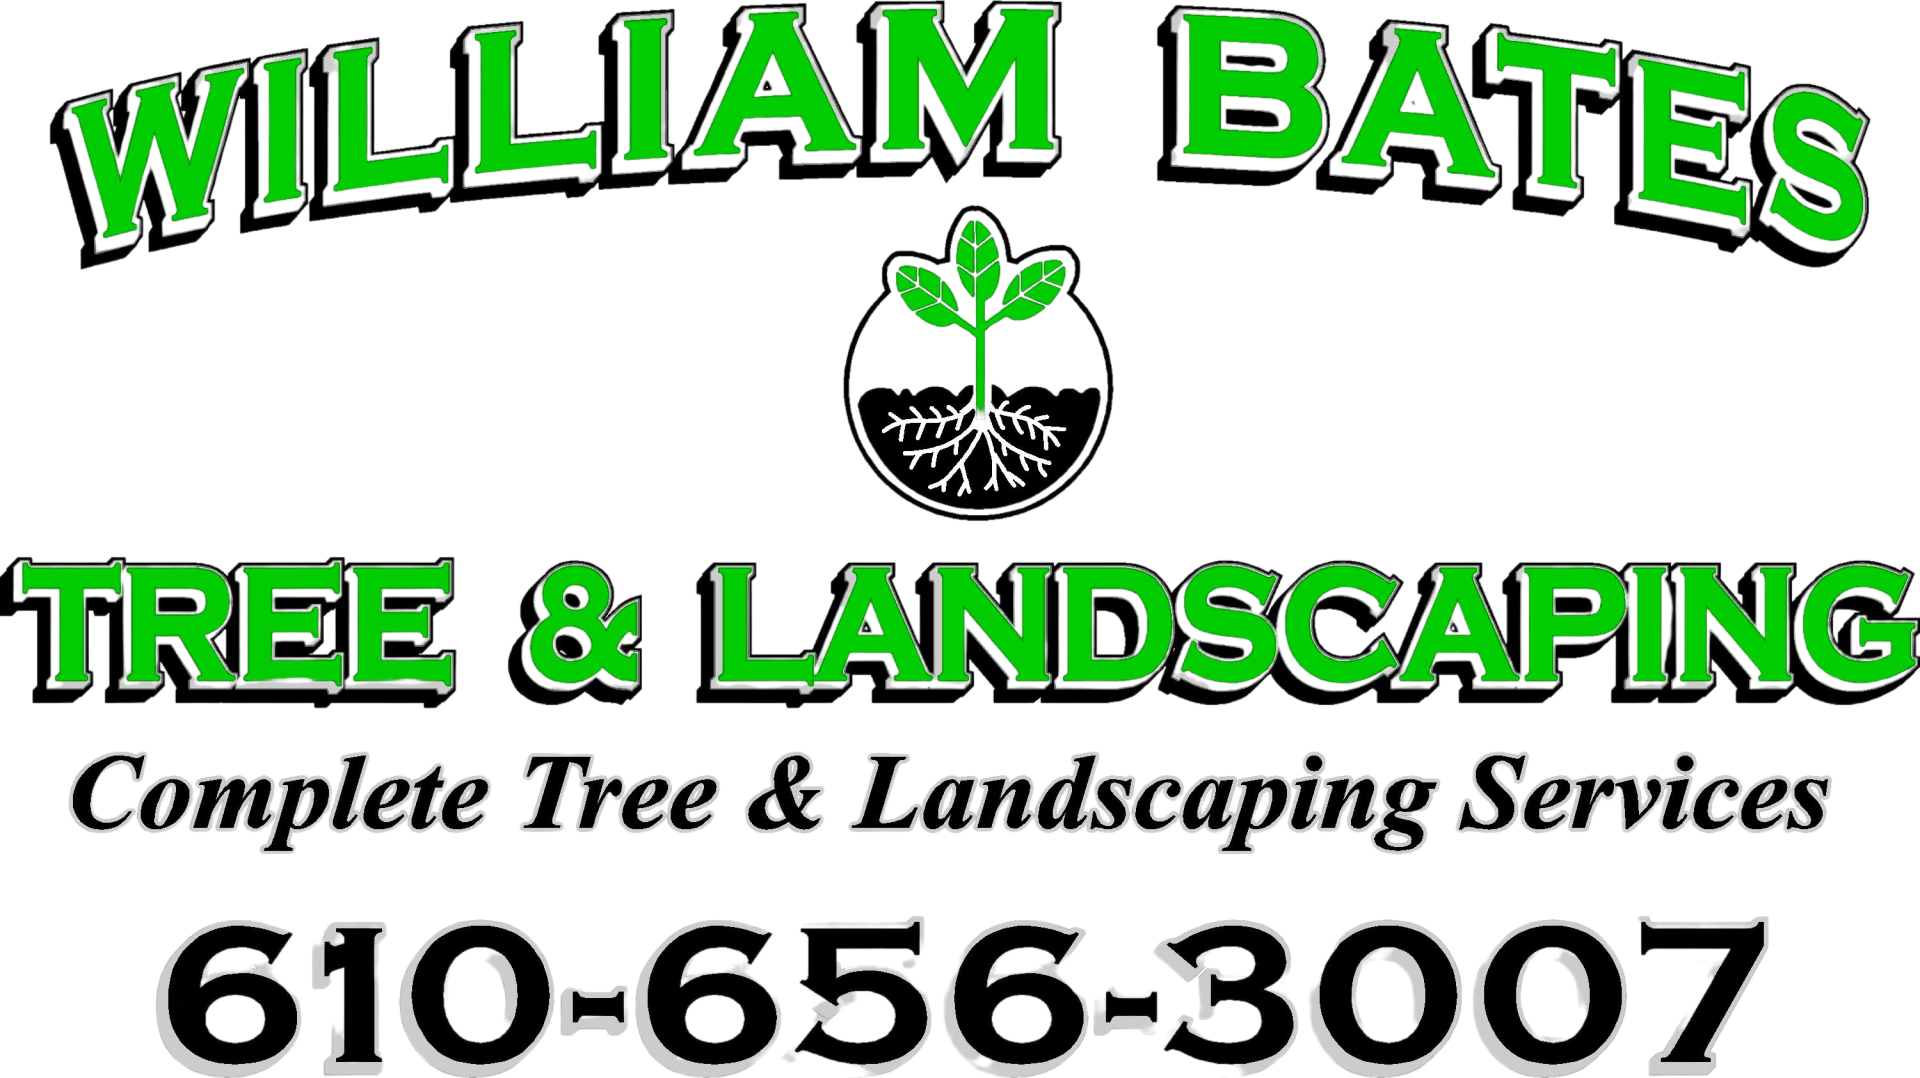 William Bates Tree Service